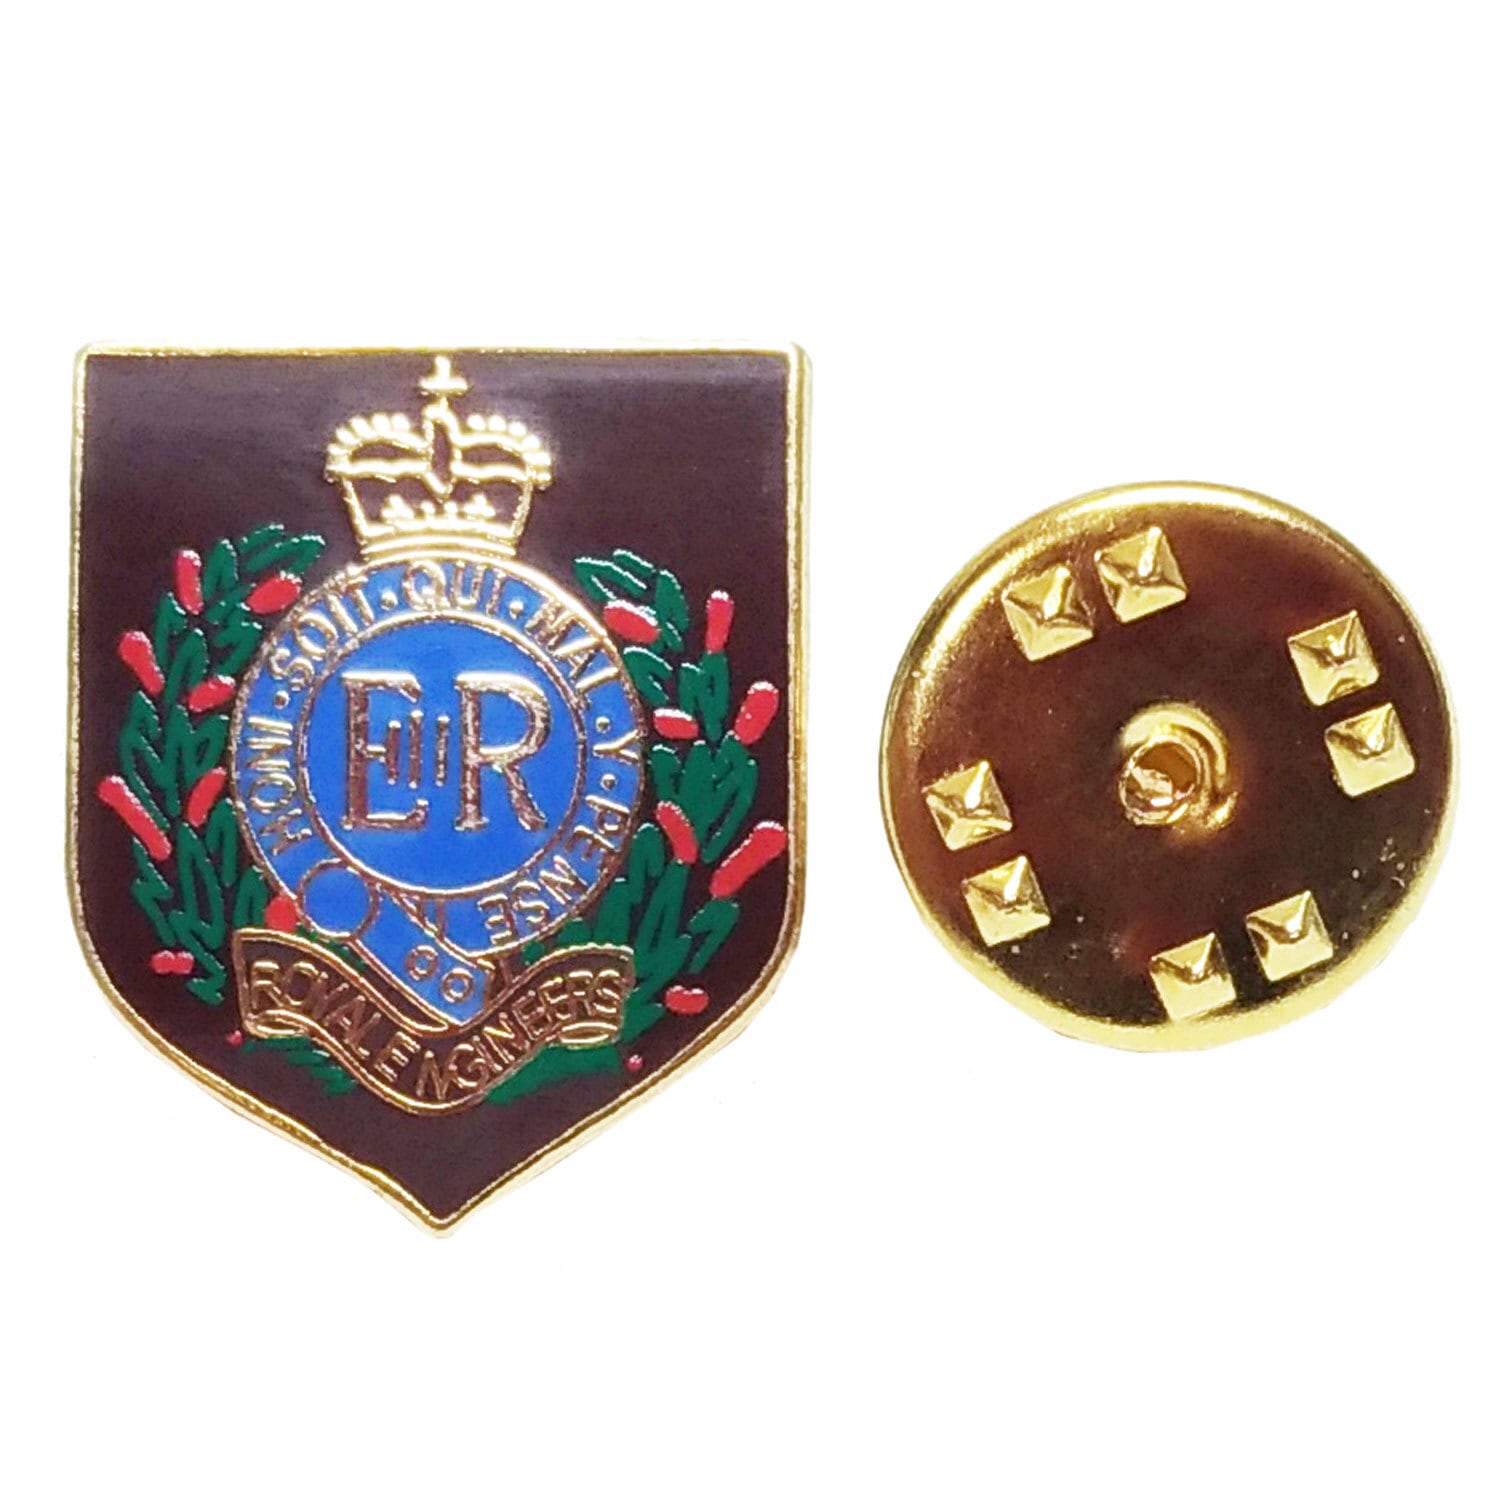 英ミリタリーピンバッジ【陸軍=Shield Royal Engineer Private's】Tradition 90043-M012A  英国雑貨専門店ブリティッシュ・ライフ